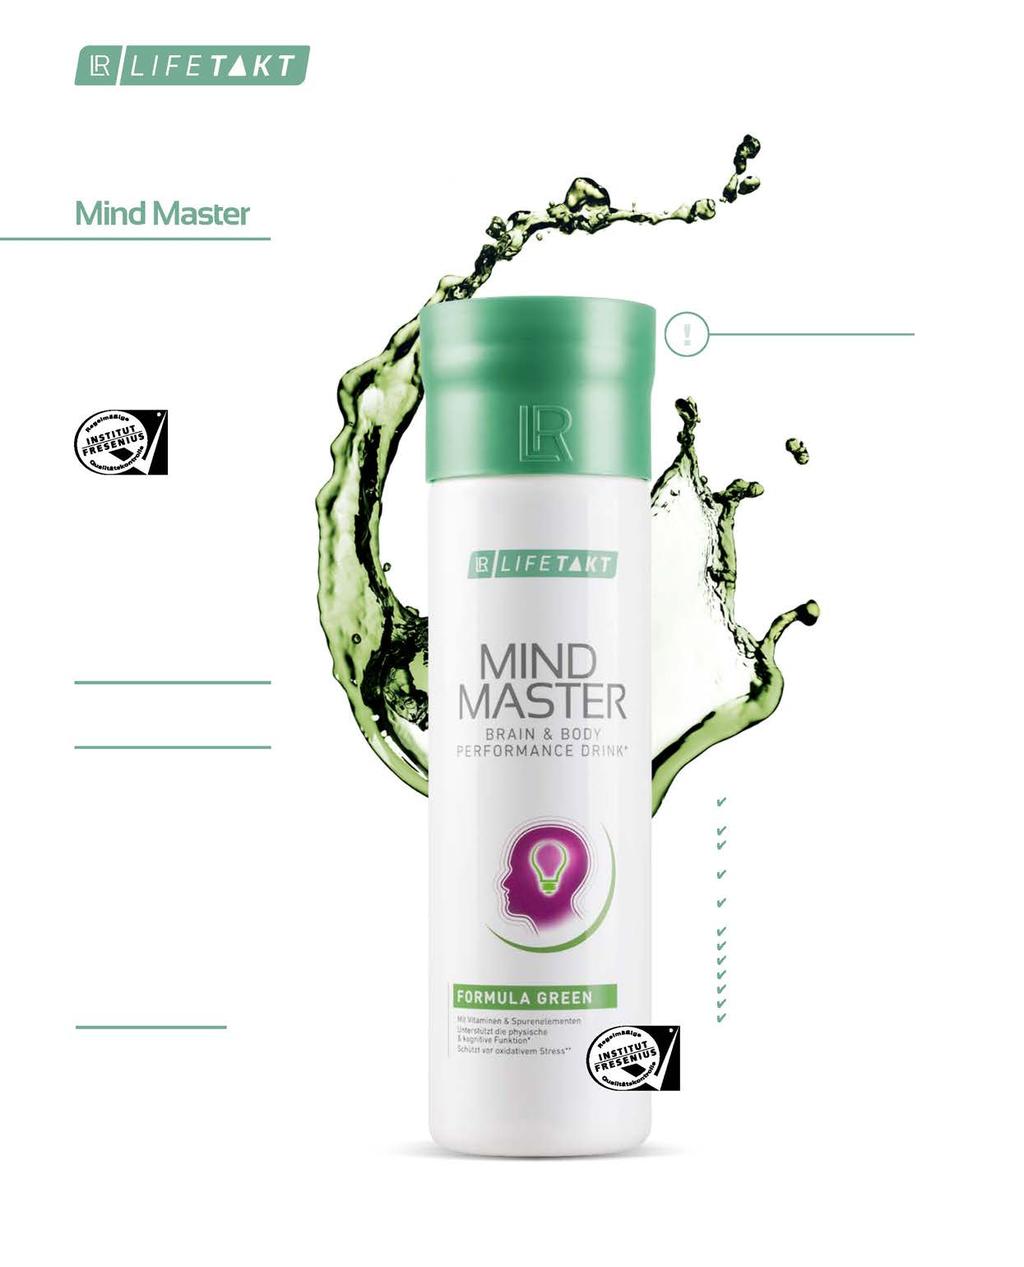 50 De Mind Master Brain & Body Performance Drink ondersteunt lichaam en geest bij oxidatieve stress 1. Mind Master bevat speciaal op elkaar afgestemde microvoedingsstoffen met belangrijke functies.